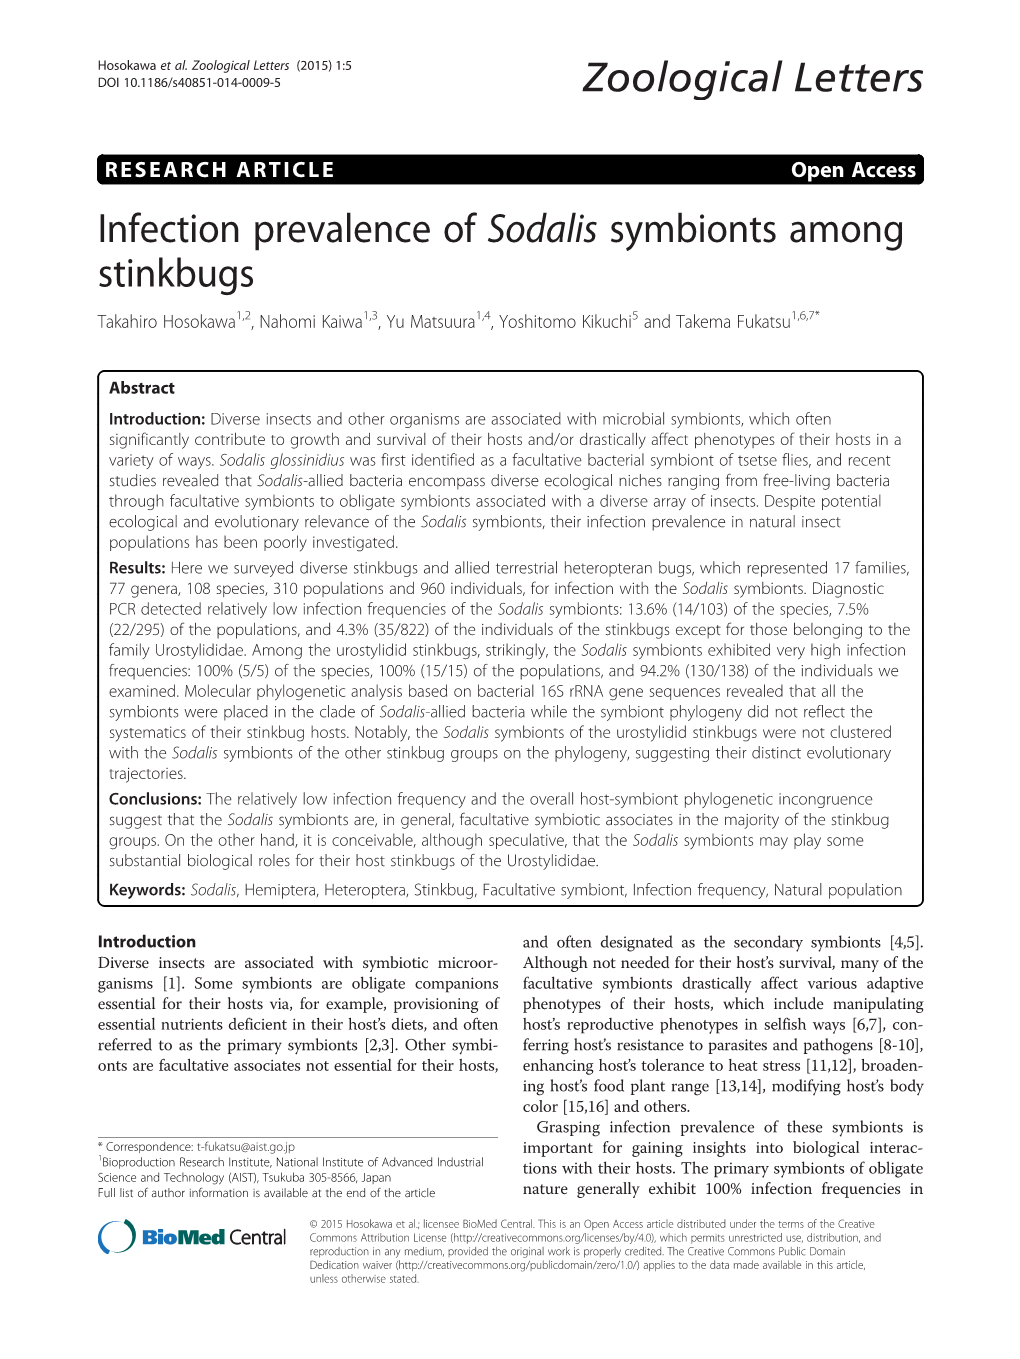 Infection Prevalence of Sodalis Symbionts Among Stinkbugs Takahiro Hosokawa1,2, Nahomi Kaiwa1,3, Yu Matsuura1,4, Yoshitomo Kikuchi5 and Takema Fukatsu1,6,7*